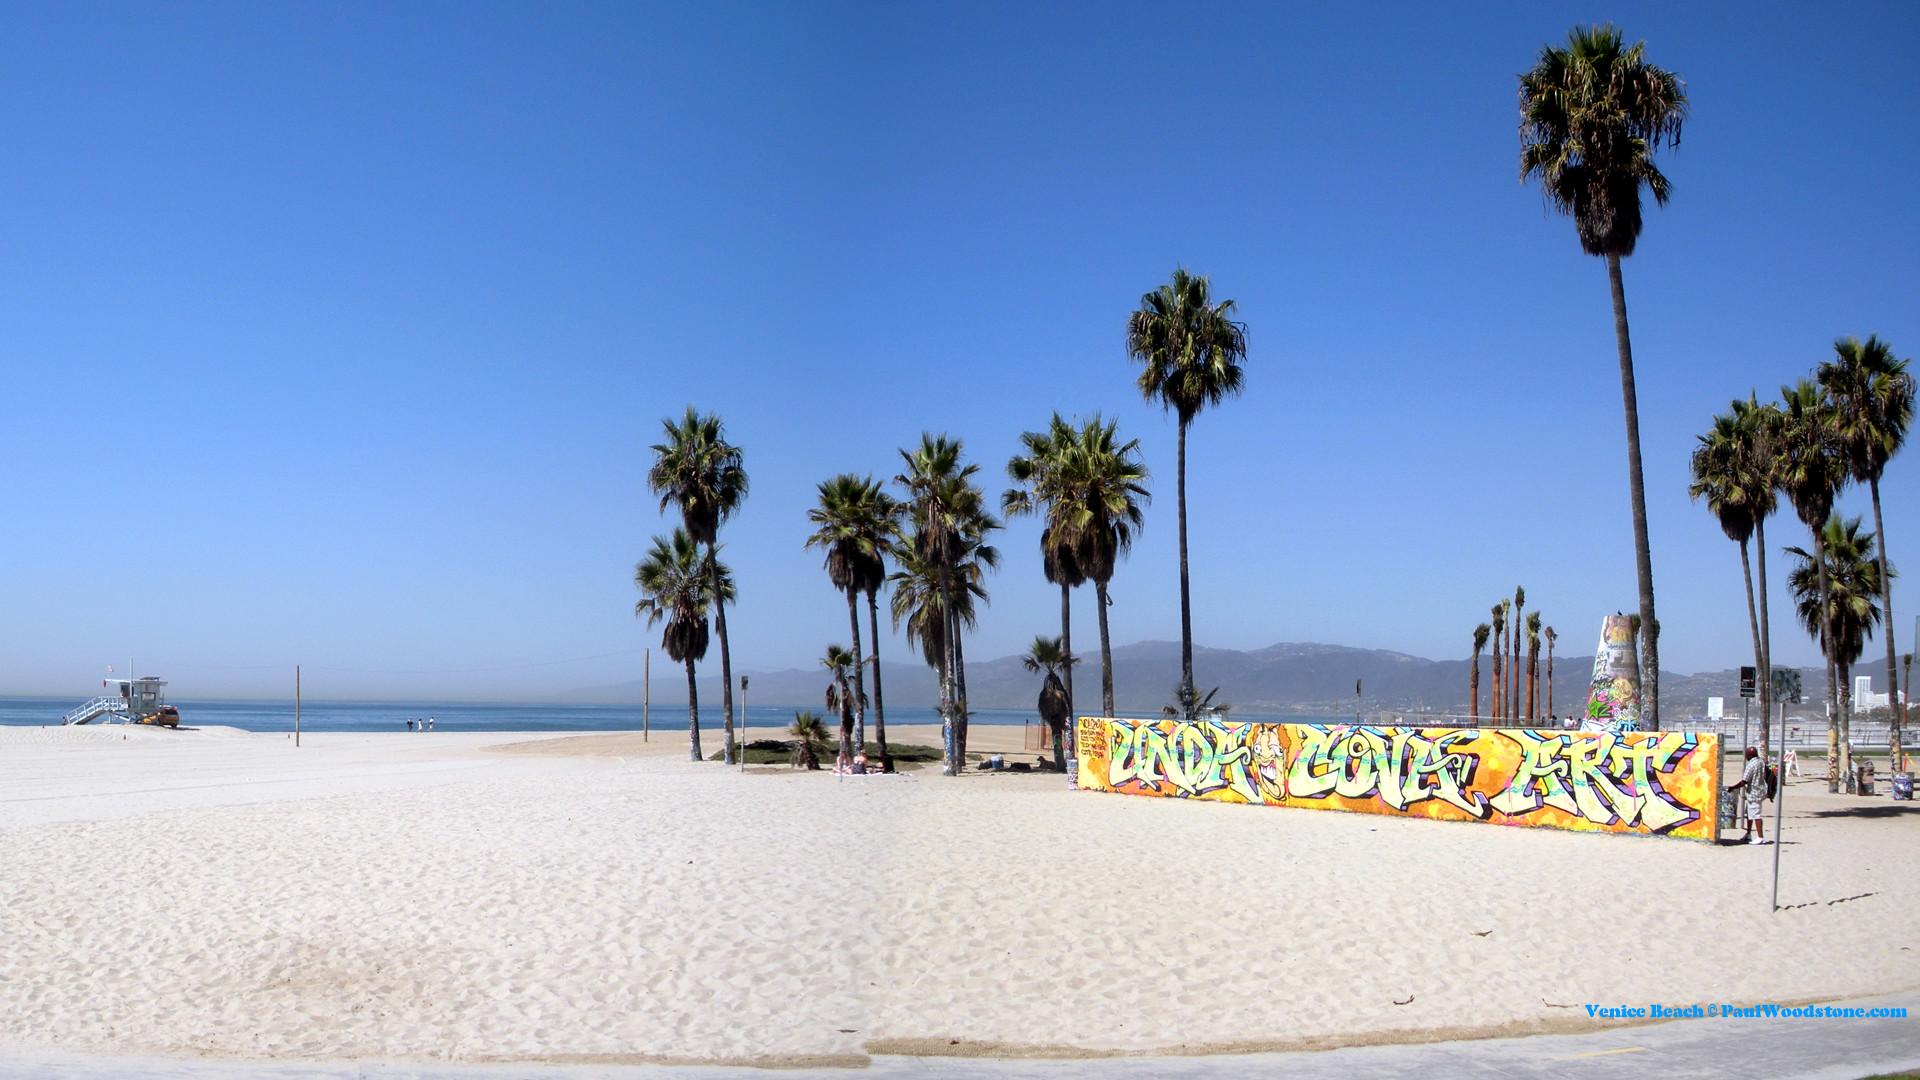 1920x1080 Venice Beach wallpaper 689695 